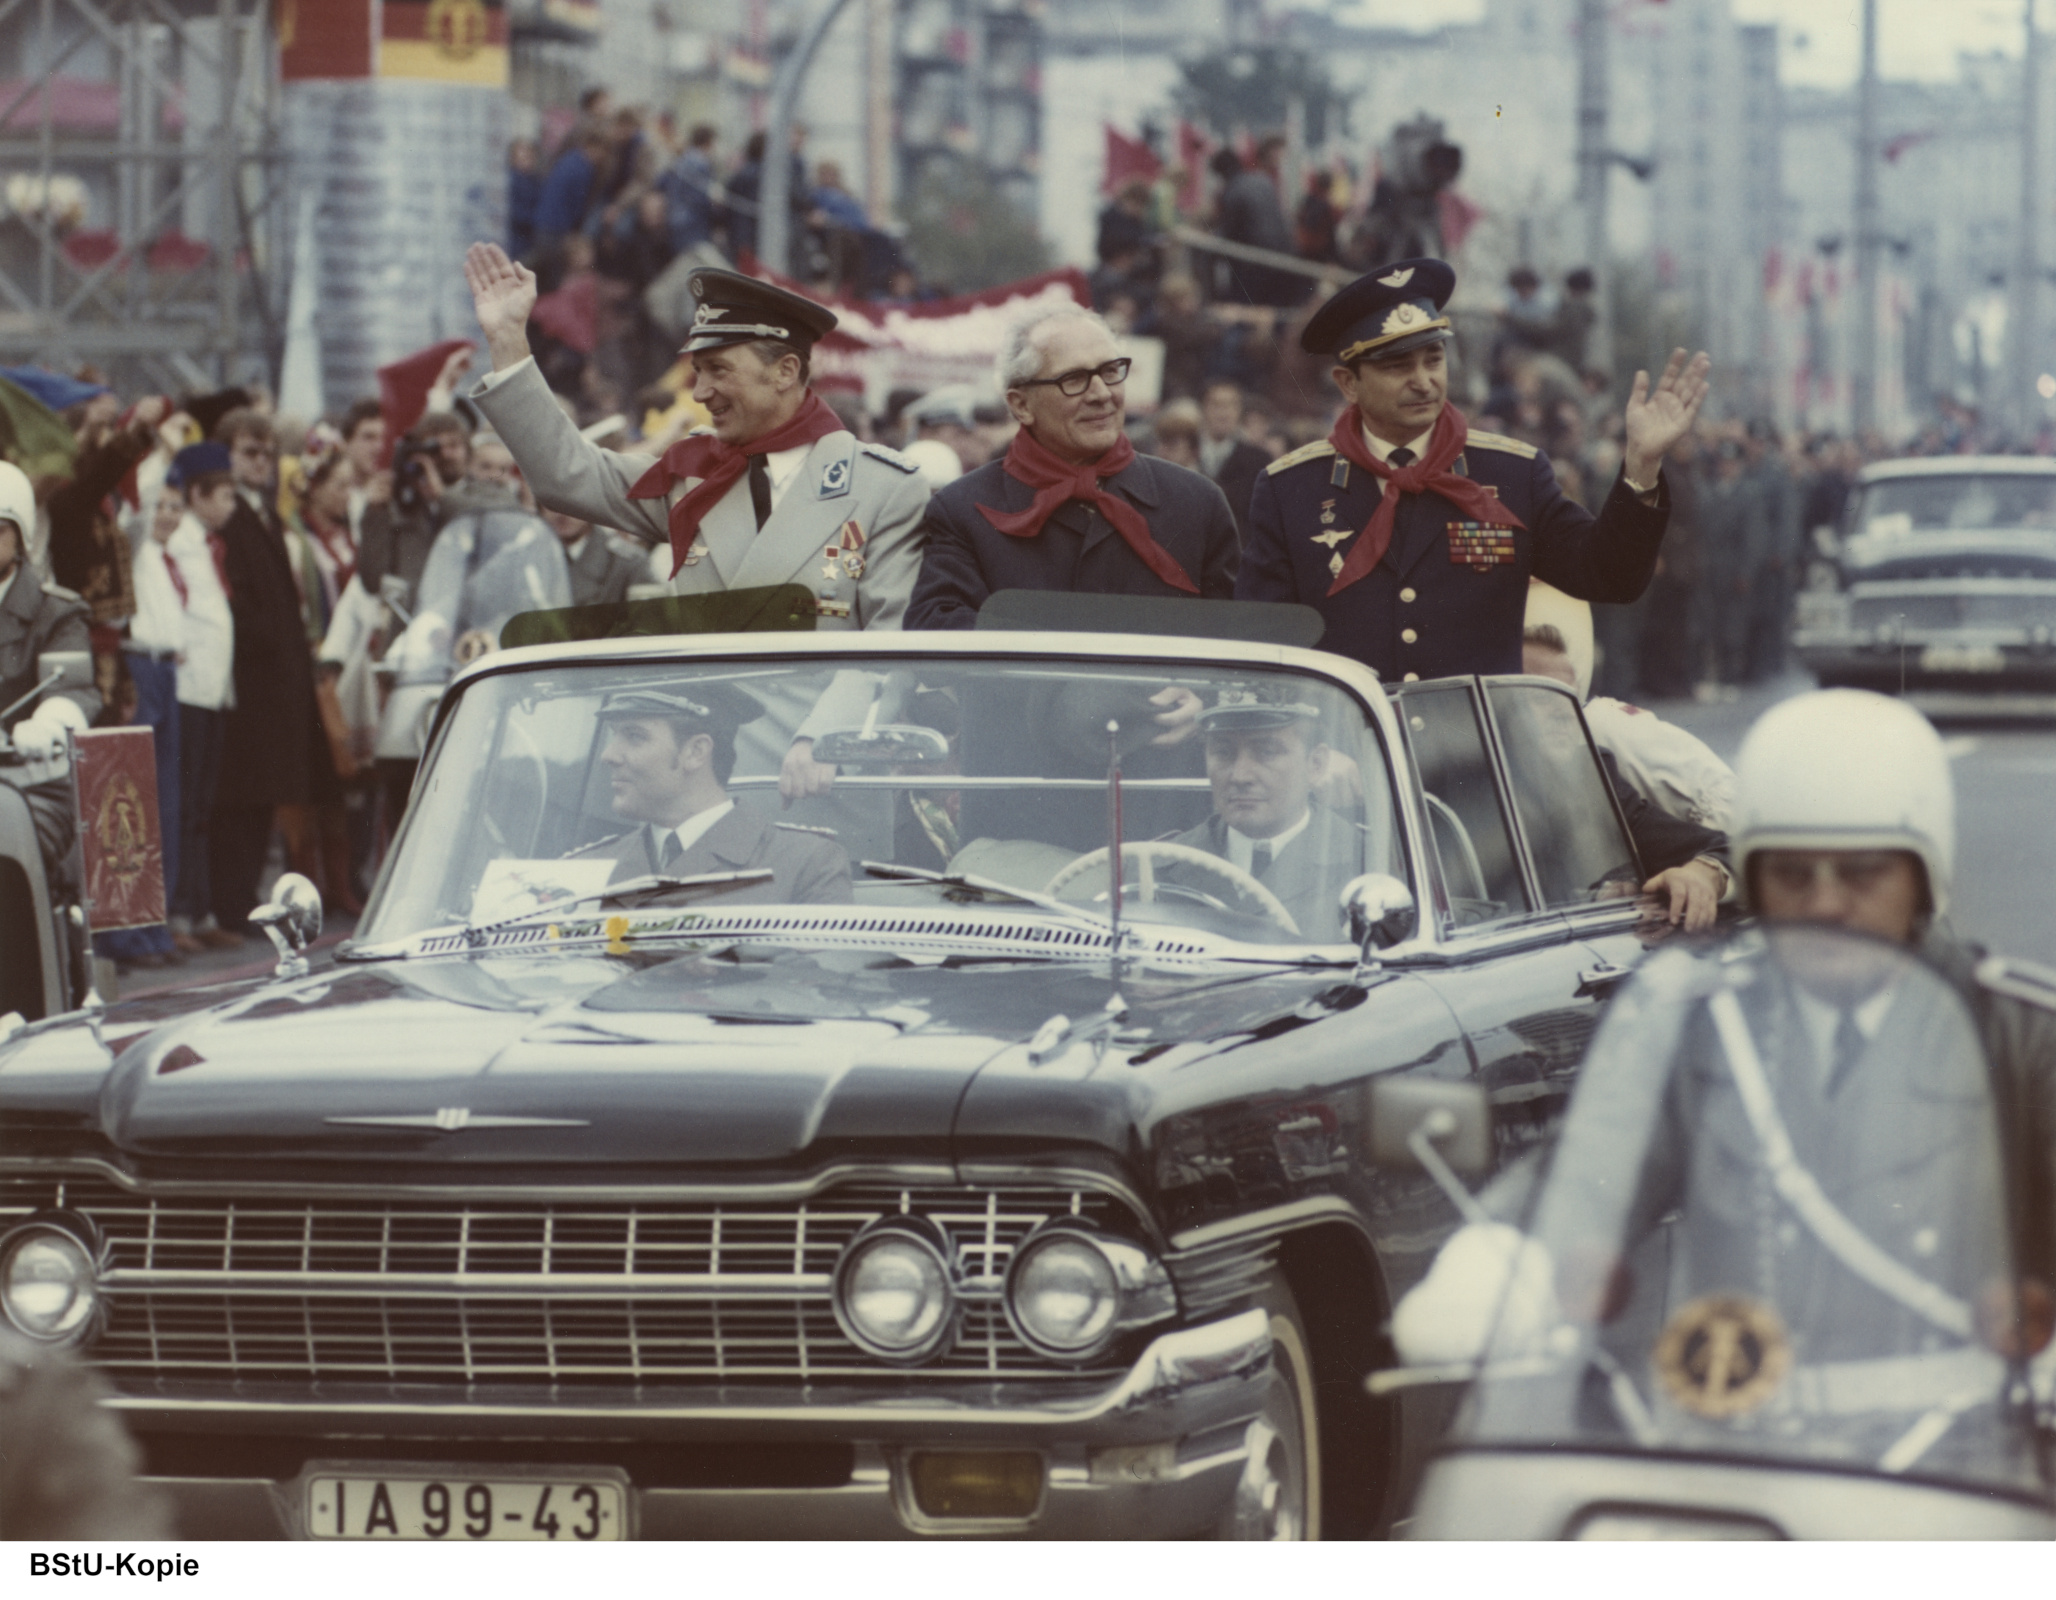 Sigmund Jähn (l.) mit seinem Kommandanten, dem sowjetischen Kosmonauten Waleri Bykowski (r.) und Erich Honecker bei der Willkommensparade in Berlin nach ihrem Raumflug.